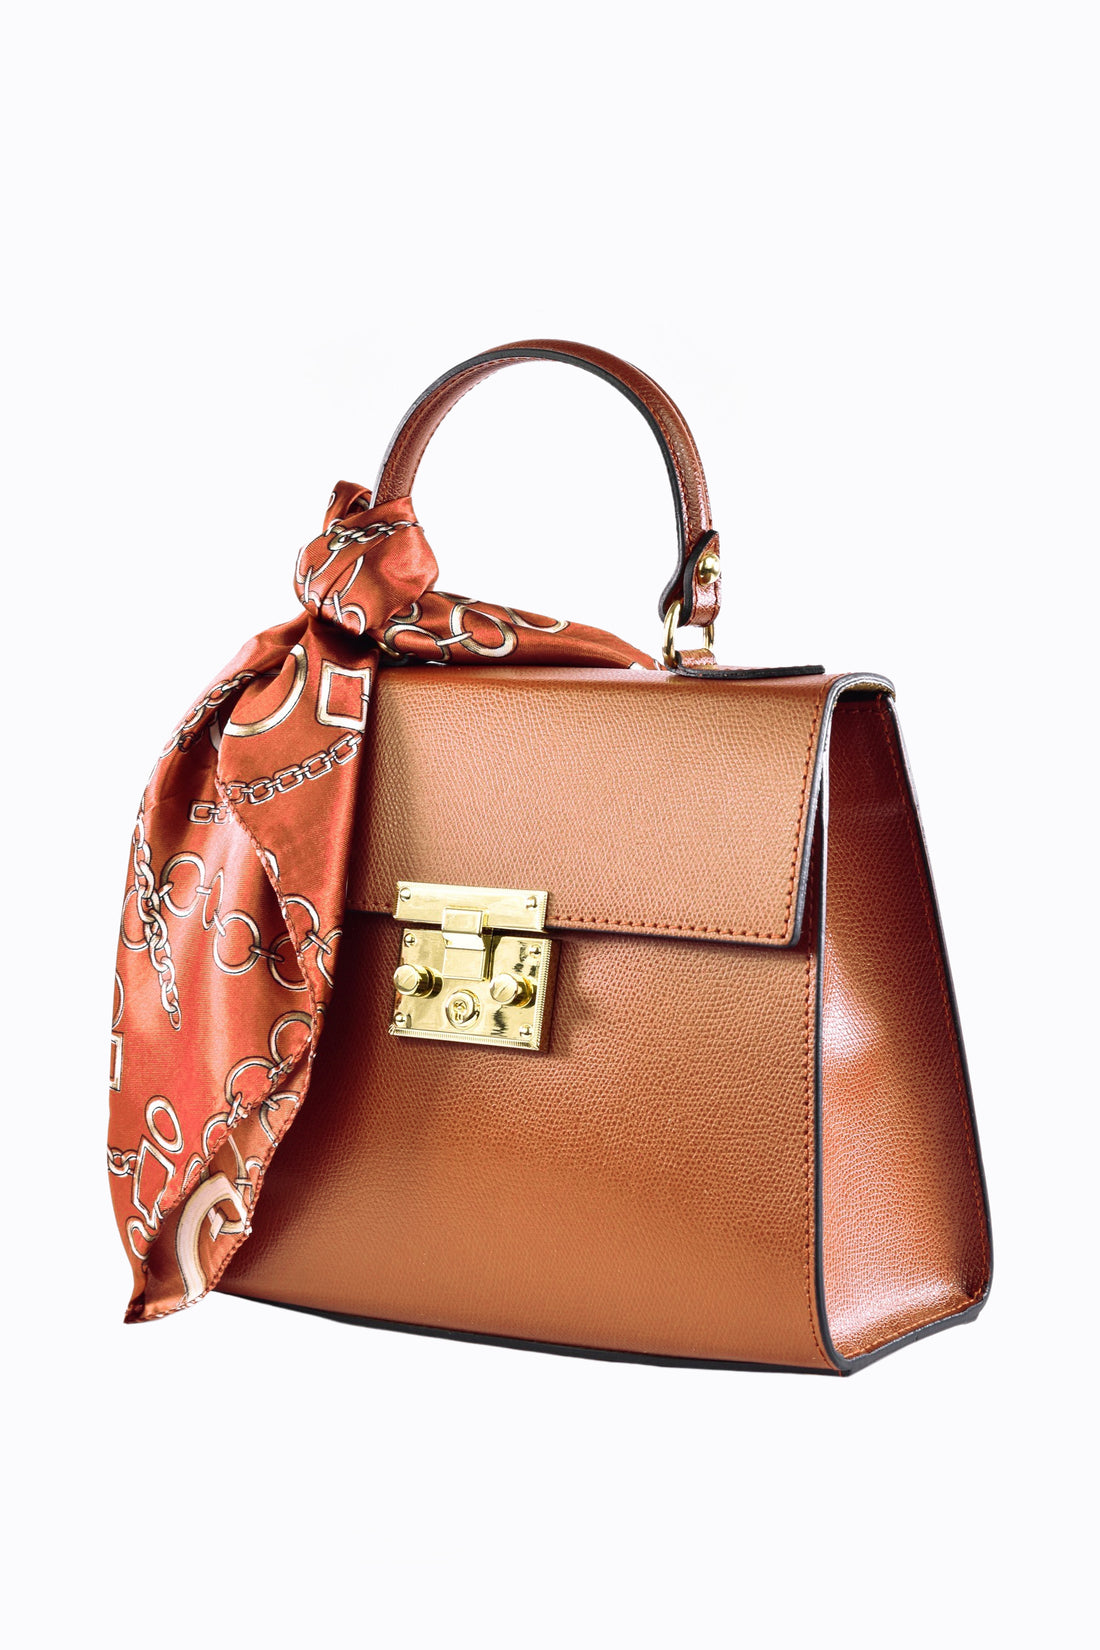 Marigold bag in Cuoio saffiano leather